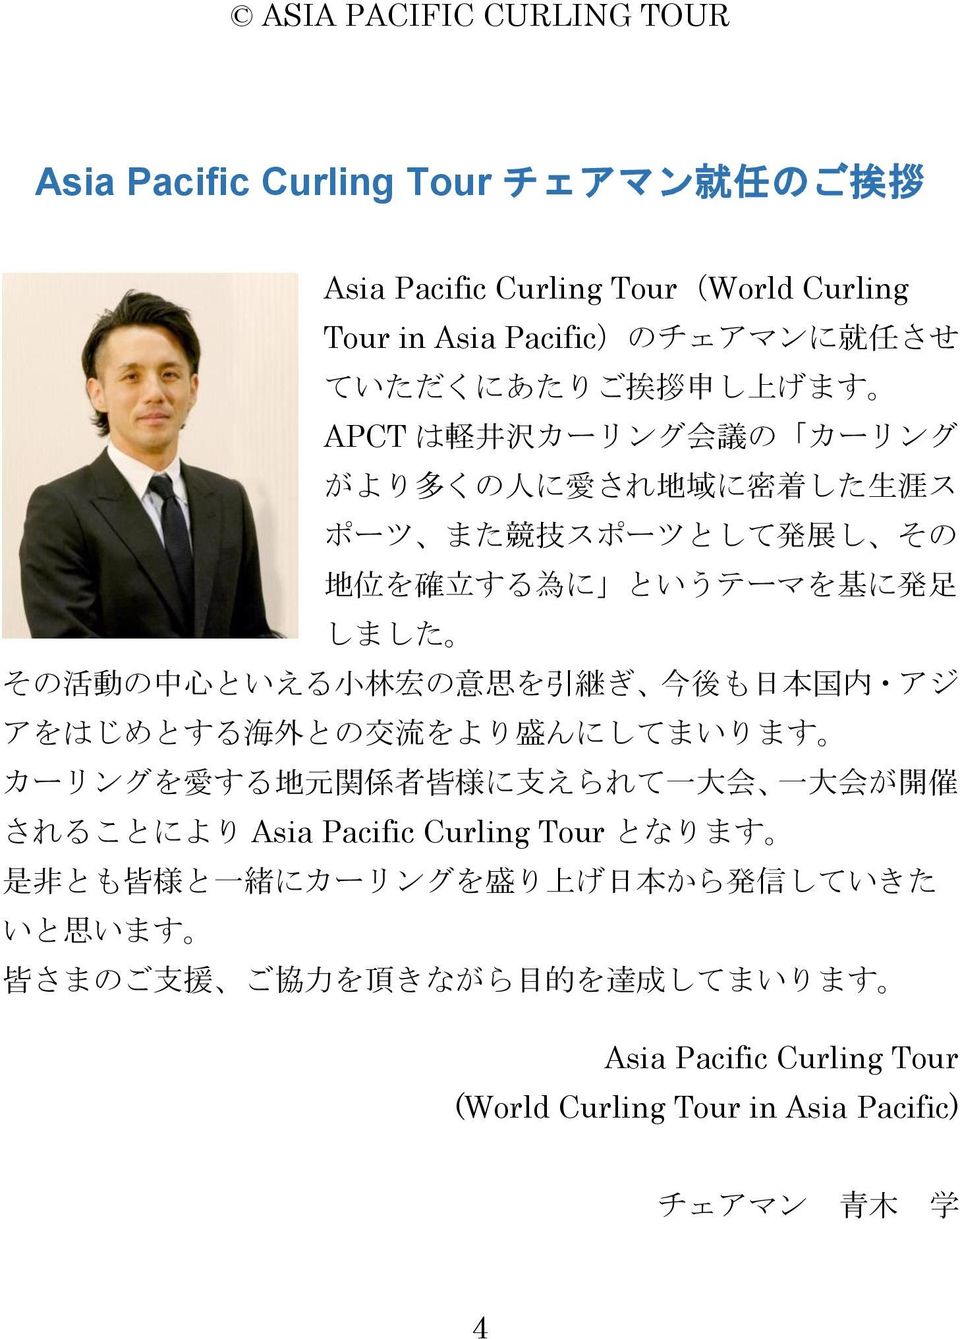 後 も 日 本 国 内 アジ アをはじめとする 海 外 との 交 流 をより 盛 んにしてまいります カーリングを 愛 する 地 元 関 係 者 皆 様 に 支 えられて 一 大 会 一 大 会 が 開 催 されることにより Asia Pacific Curling Tour となります 是 非 とも 皆 様 と 一